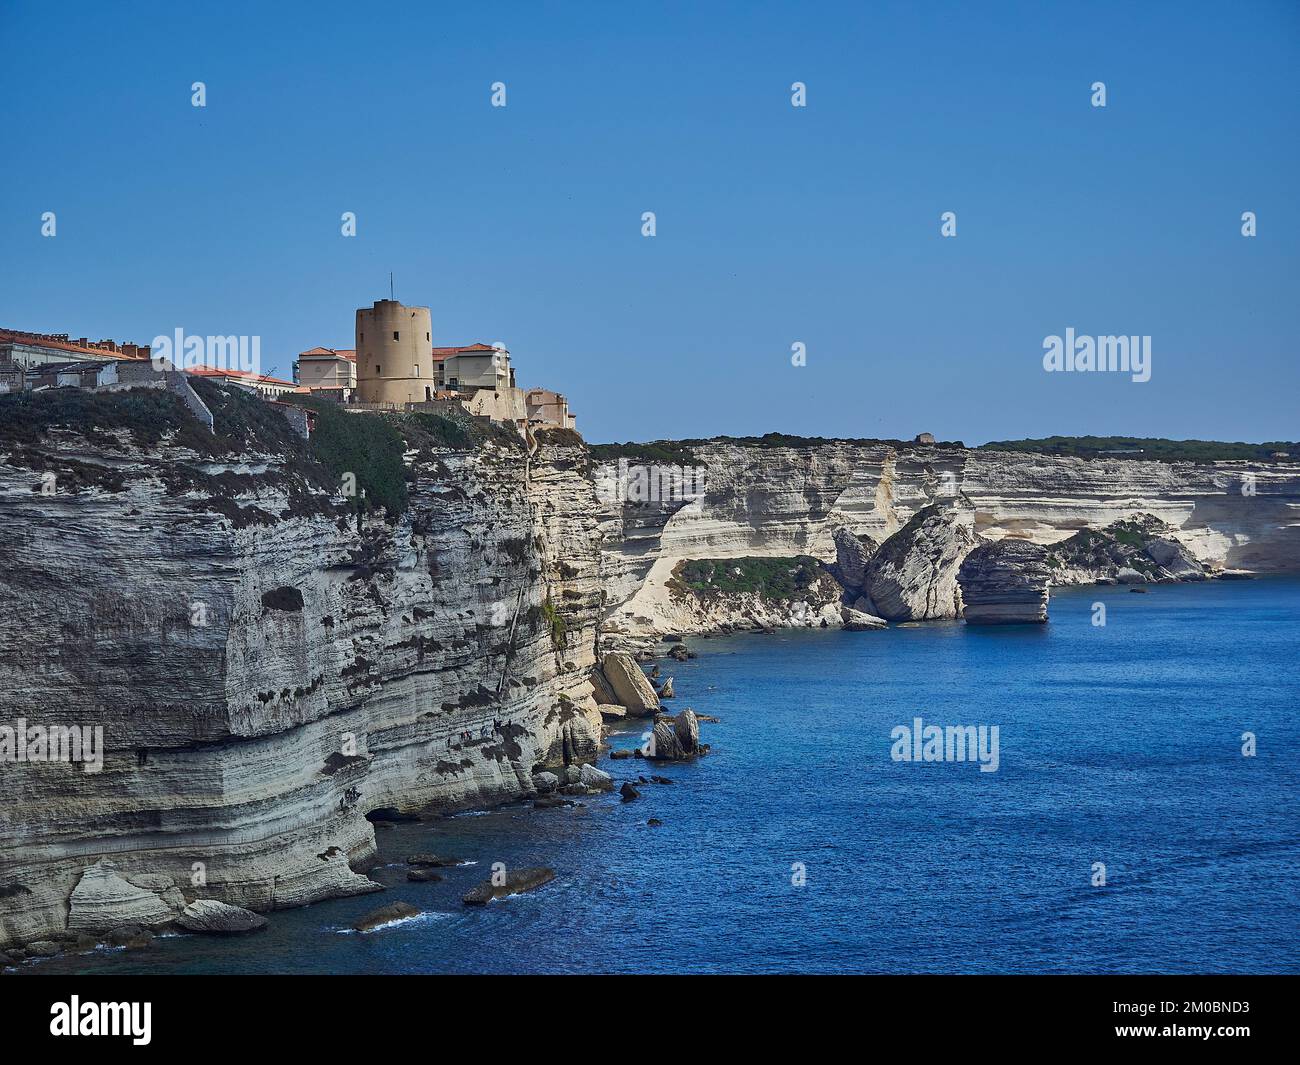 La città di Bonifacio si trova su una scogliera bianca, circondata dalle acque turchesi del mar mediterraneo sull'isola di Corsica, in Francia Foto Stock